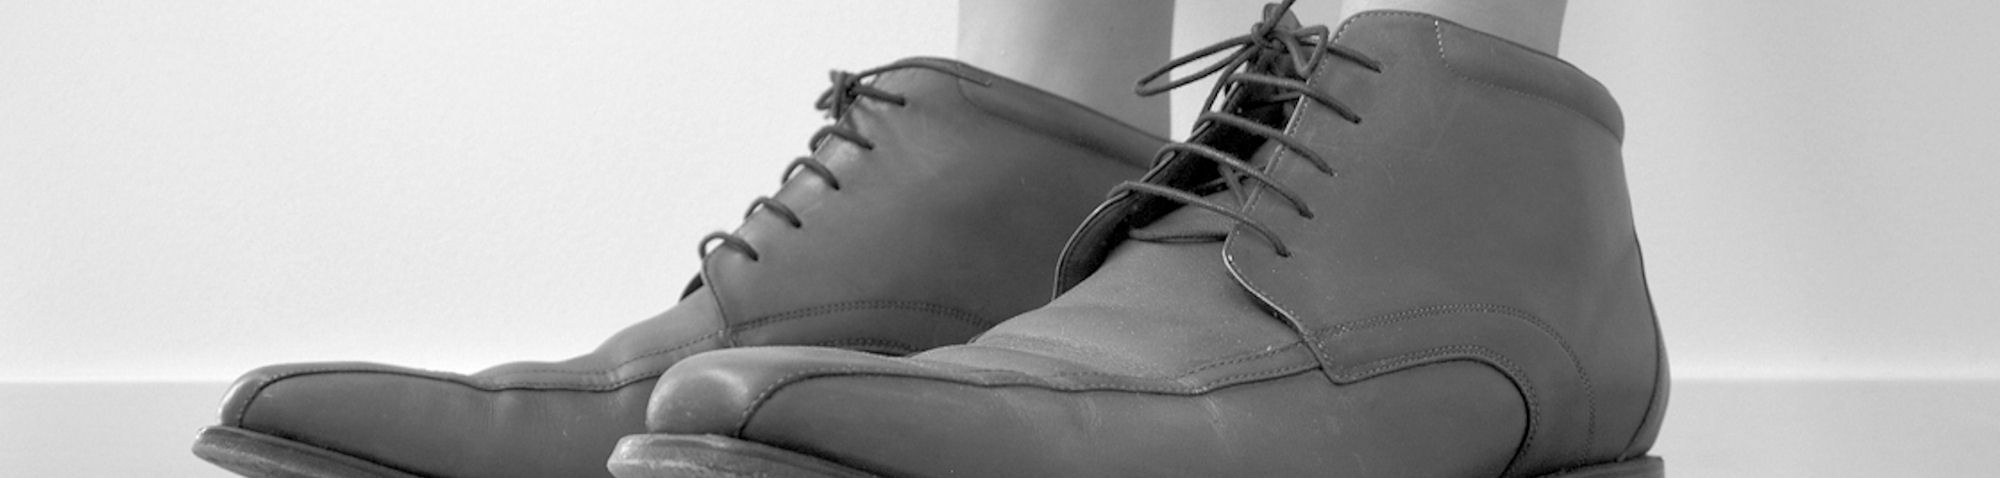 Marcommatters in de schoenen van de klant ZW spiegel-2000X470